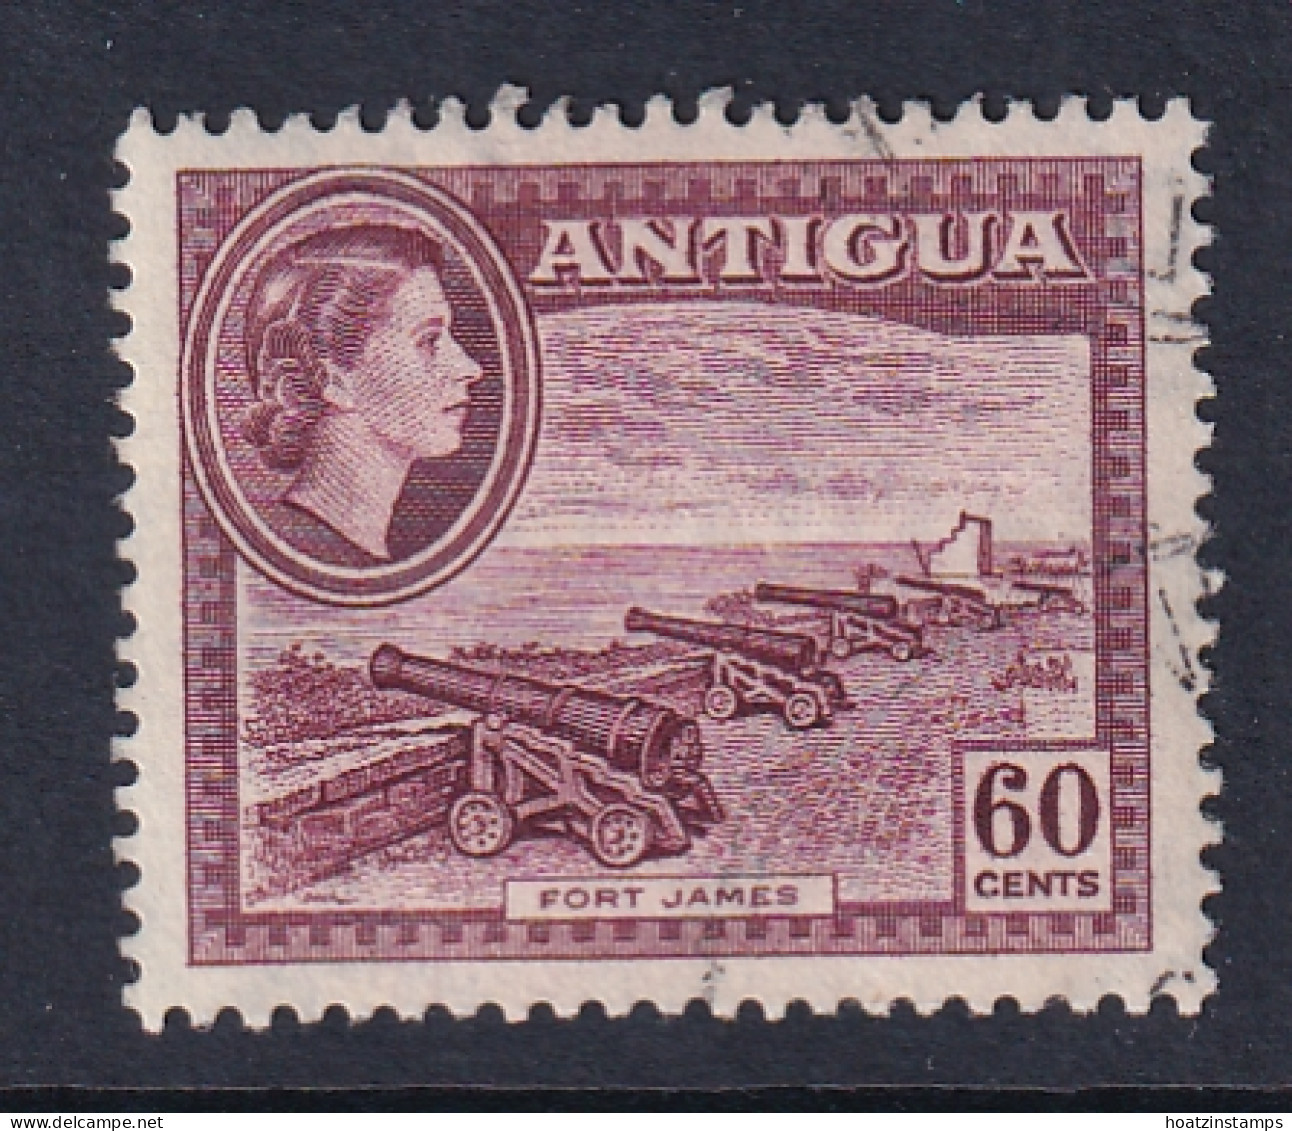 Antigua: 1953/62   QE II - Pictorial     SG131    60c     Used - 1858-1960 Colonia Britannica